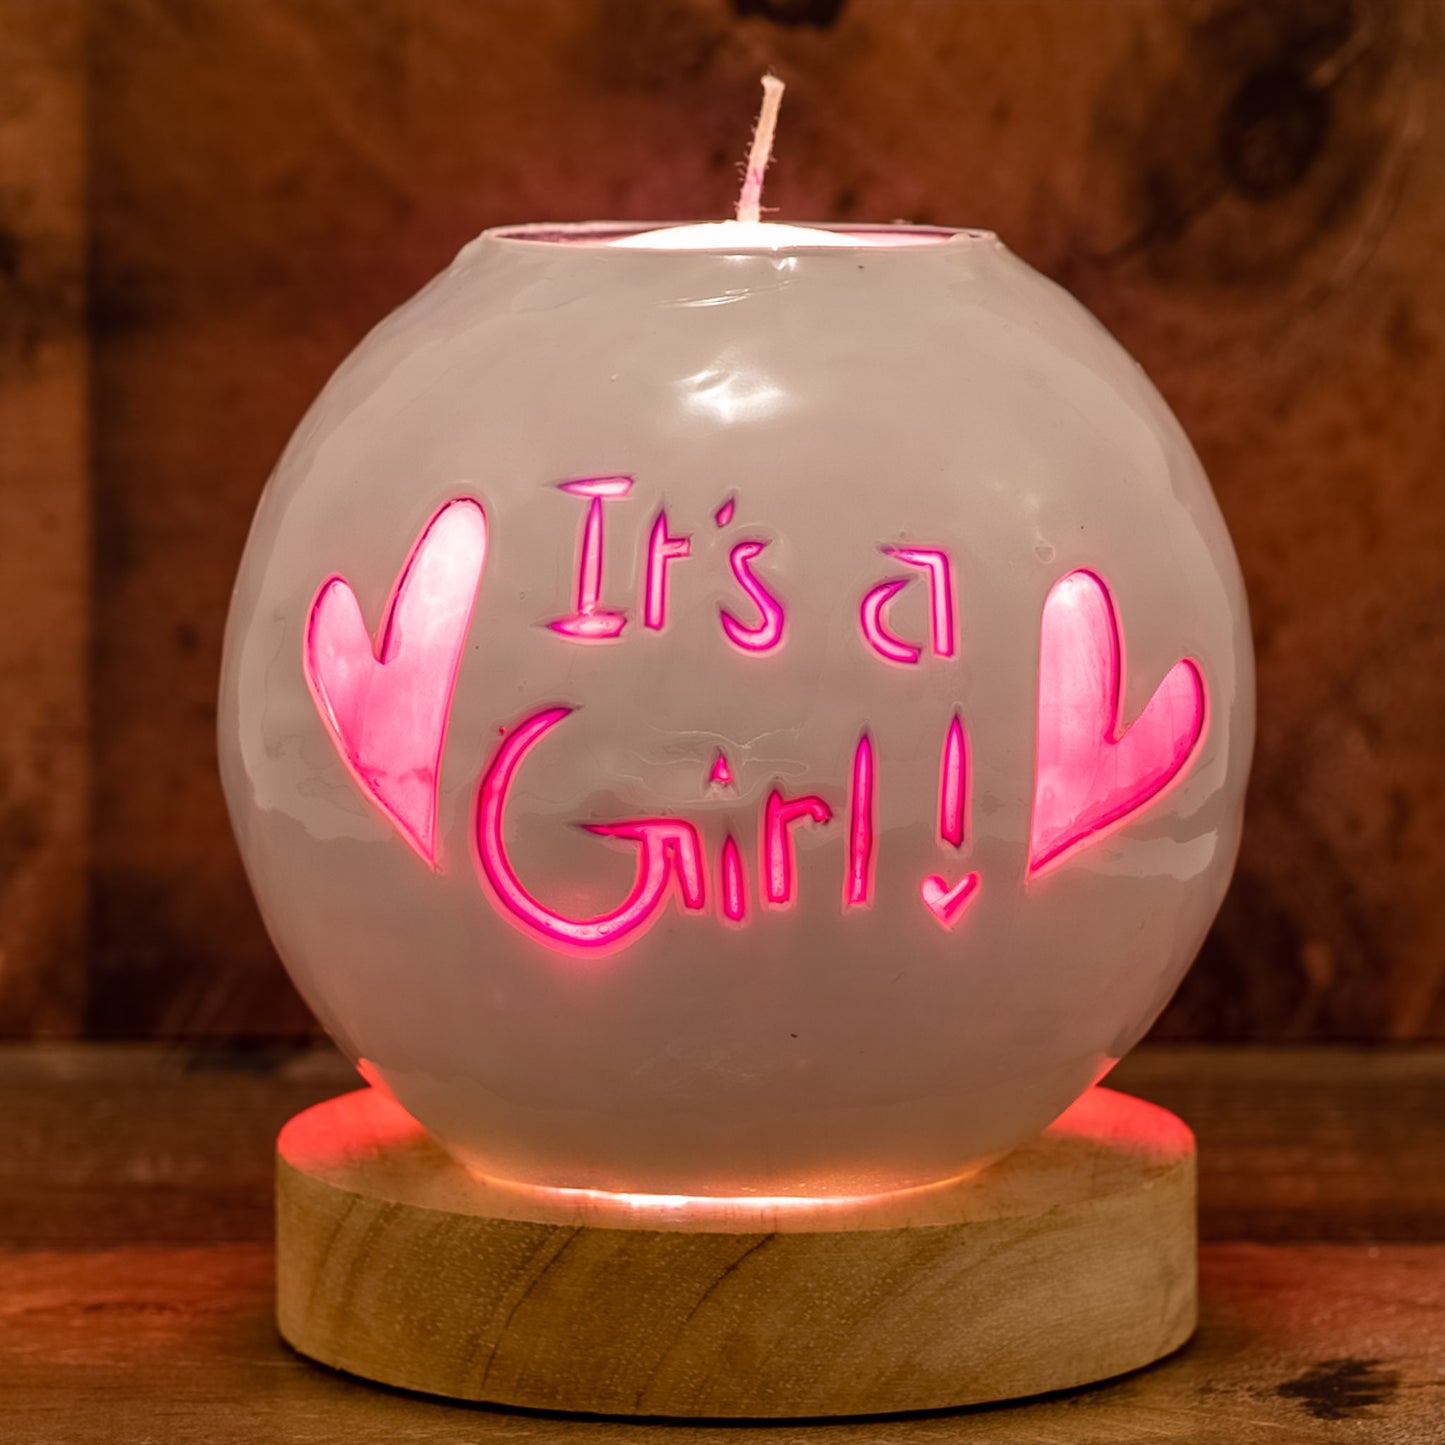 It's A Girl!